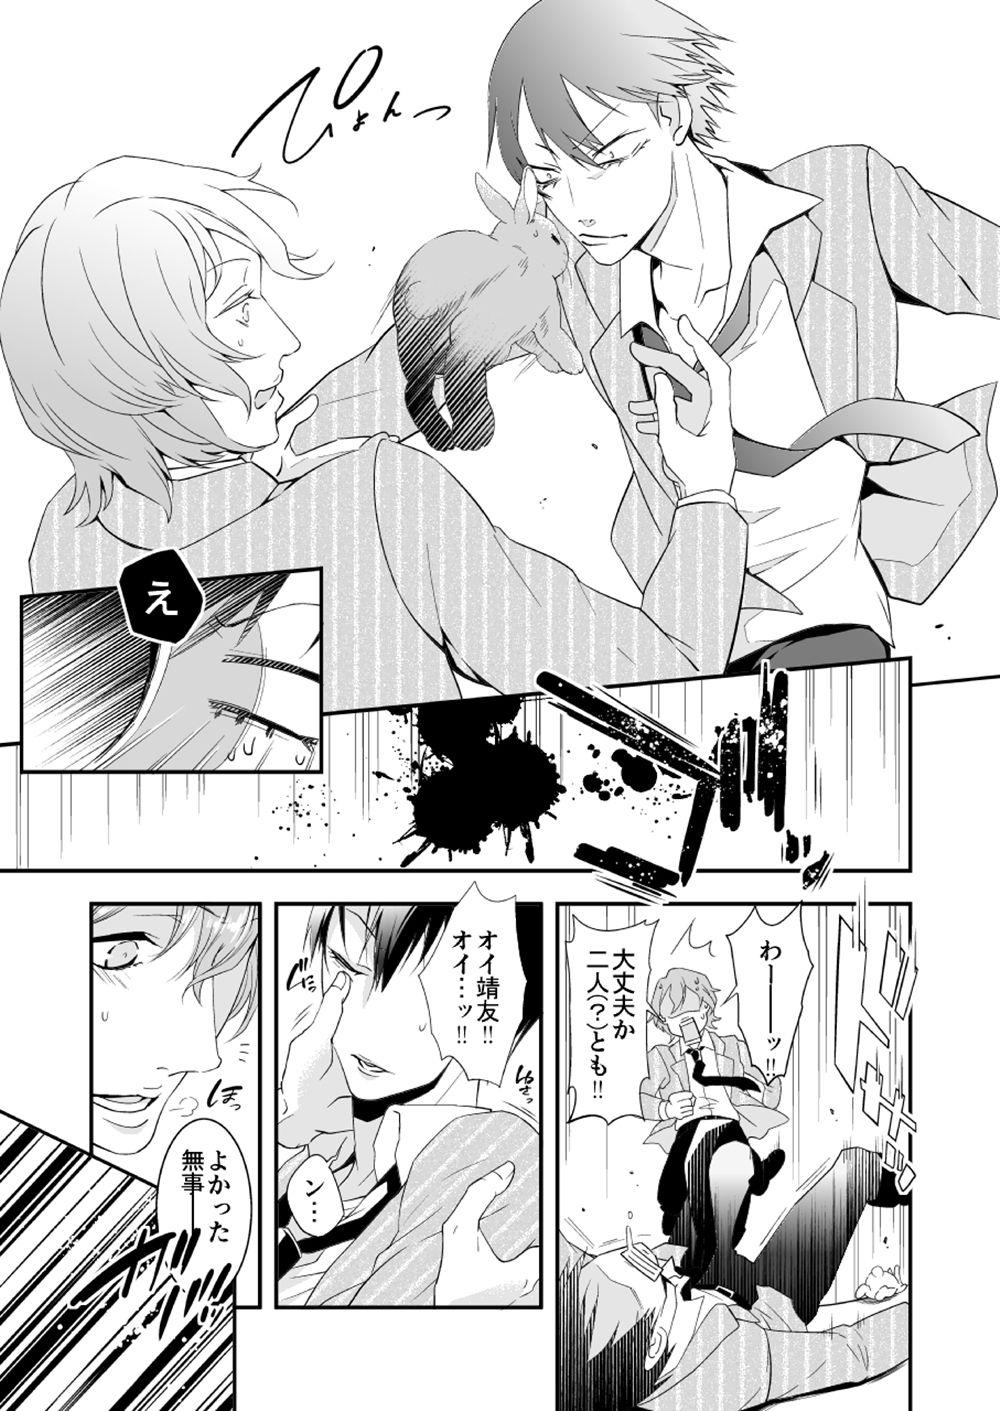 Foot Rabbitrip - Yowamushi pedal Homosexual - Page 6